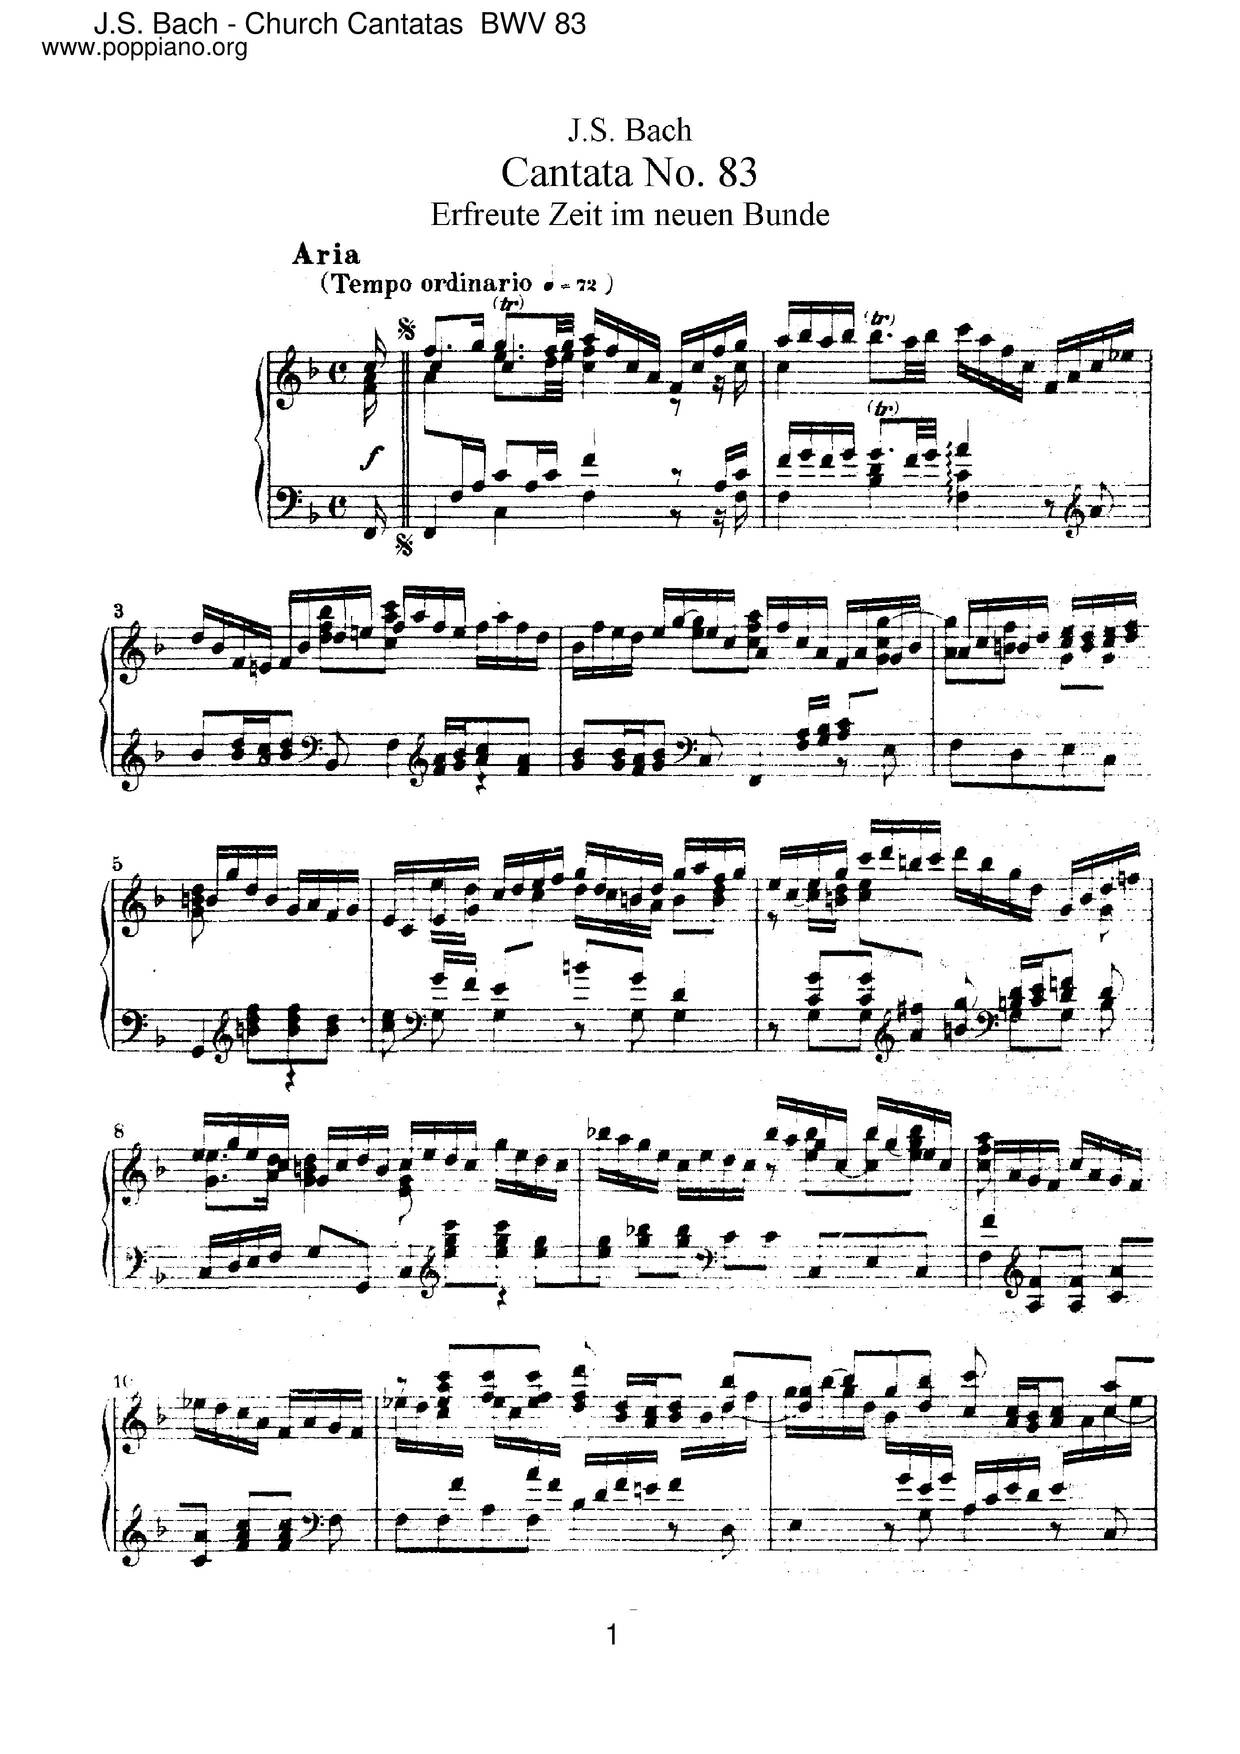 Erfreute Zeit Im Neuen Bunde, BWV 83 Score